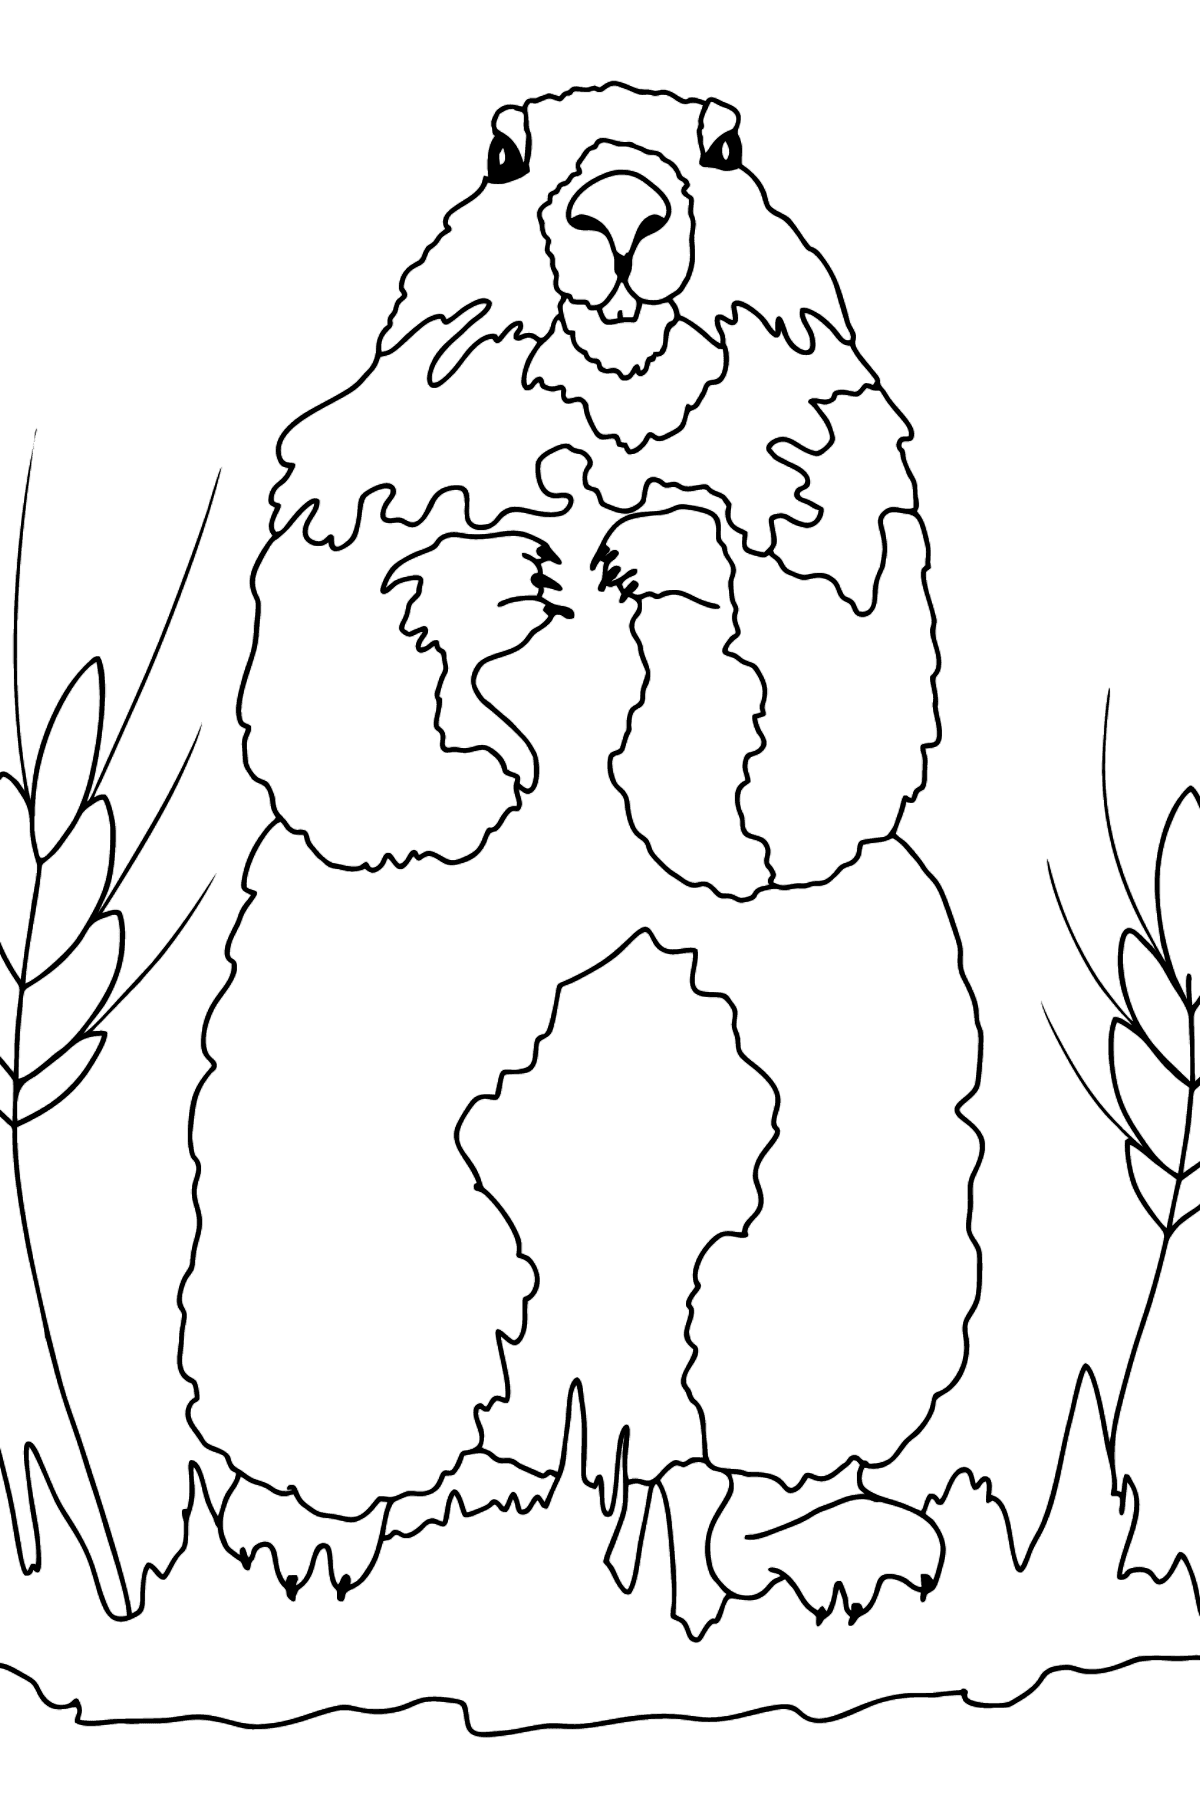 Tegning til fargelegging murmeldyr (vanskelig) - Tegninger til fargelegging for barn